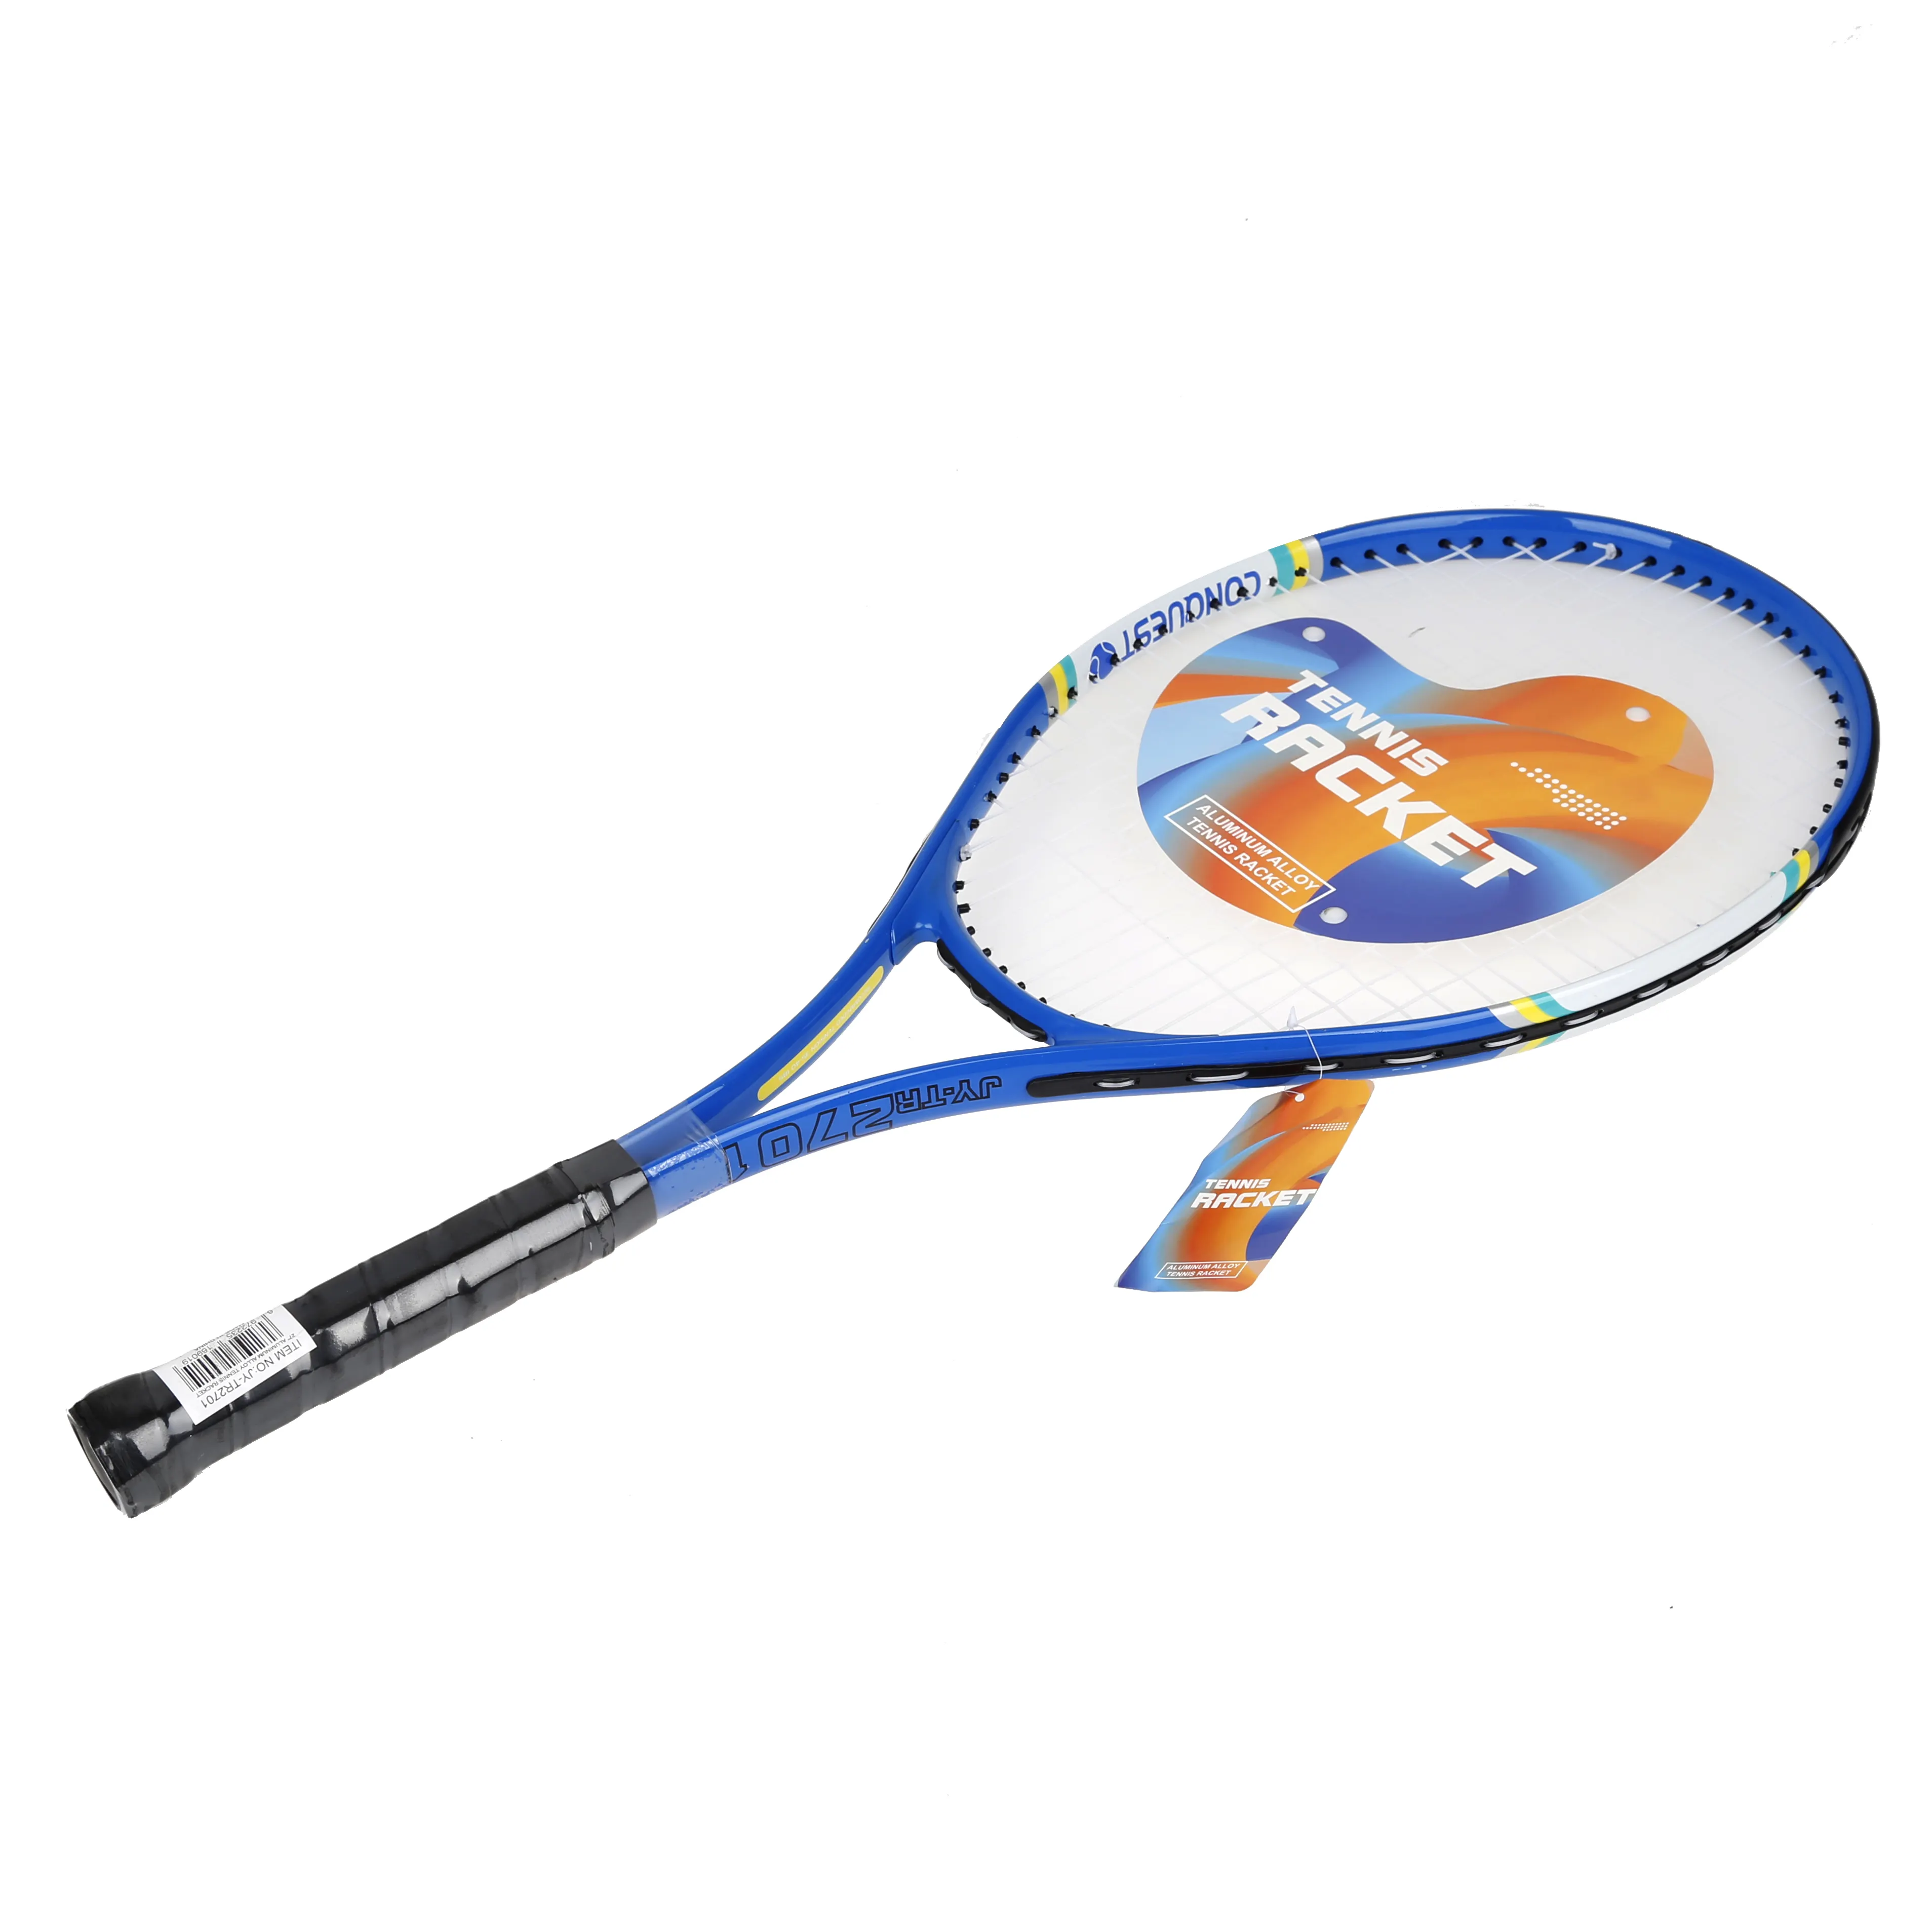 Racchetta da tennis per adulti senior per esercizi sportivi racchetta da tennis in grafite per allenamento composito prince cover racchetta usata